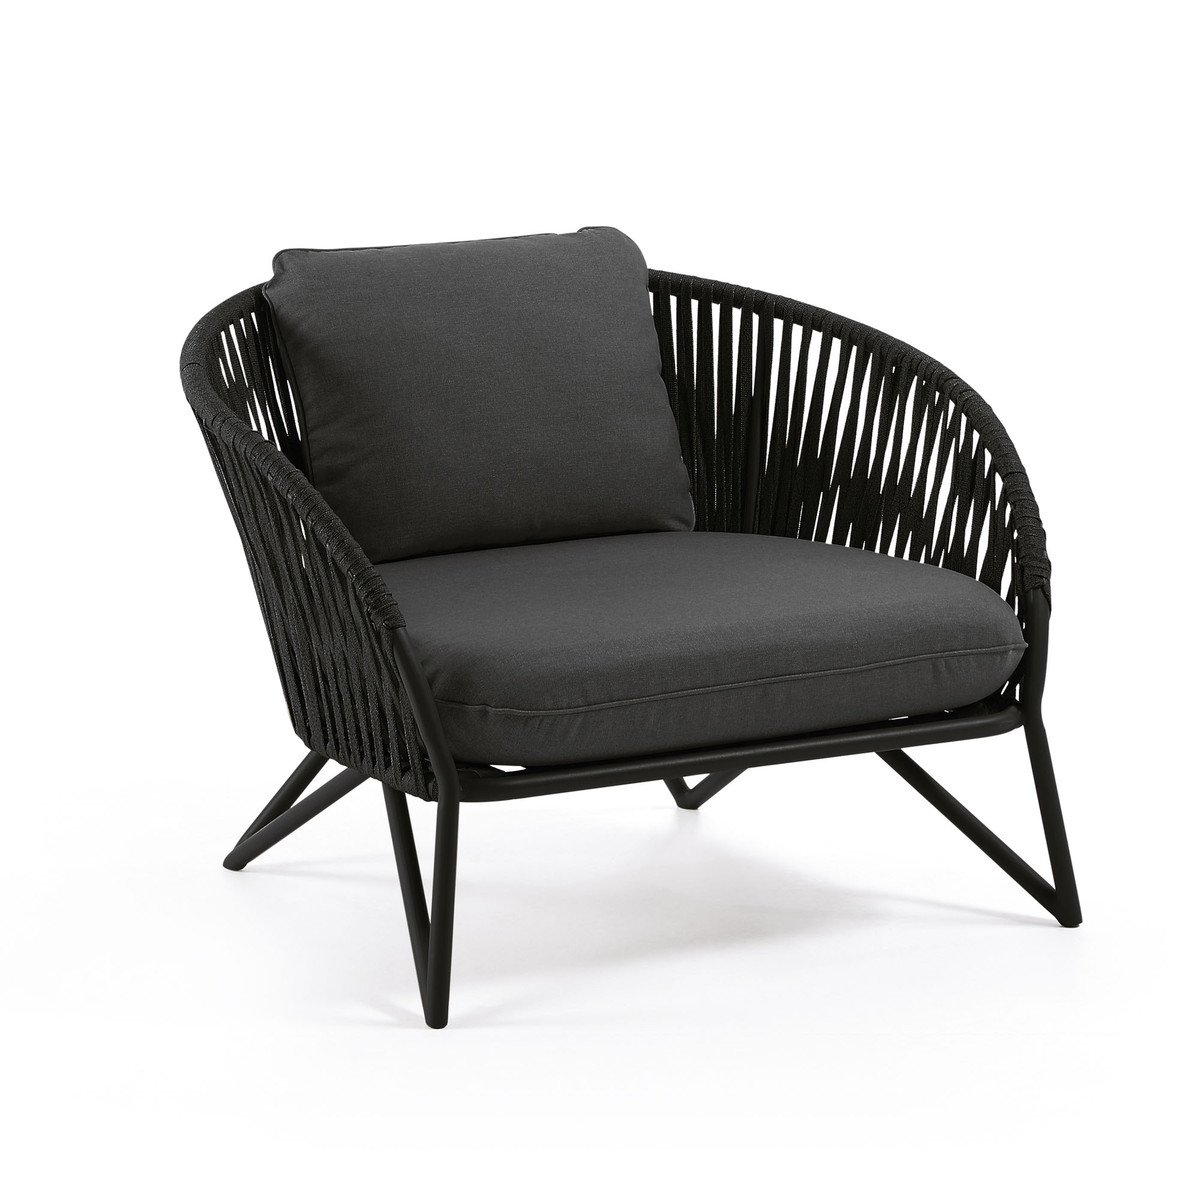 IT0285J15 0 - Branzie Arm Chair Black